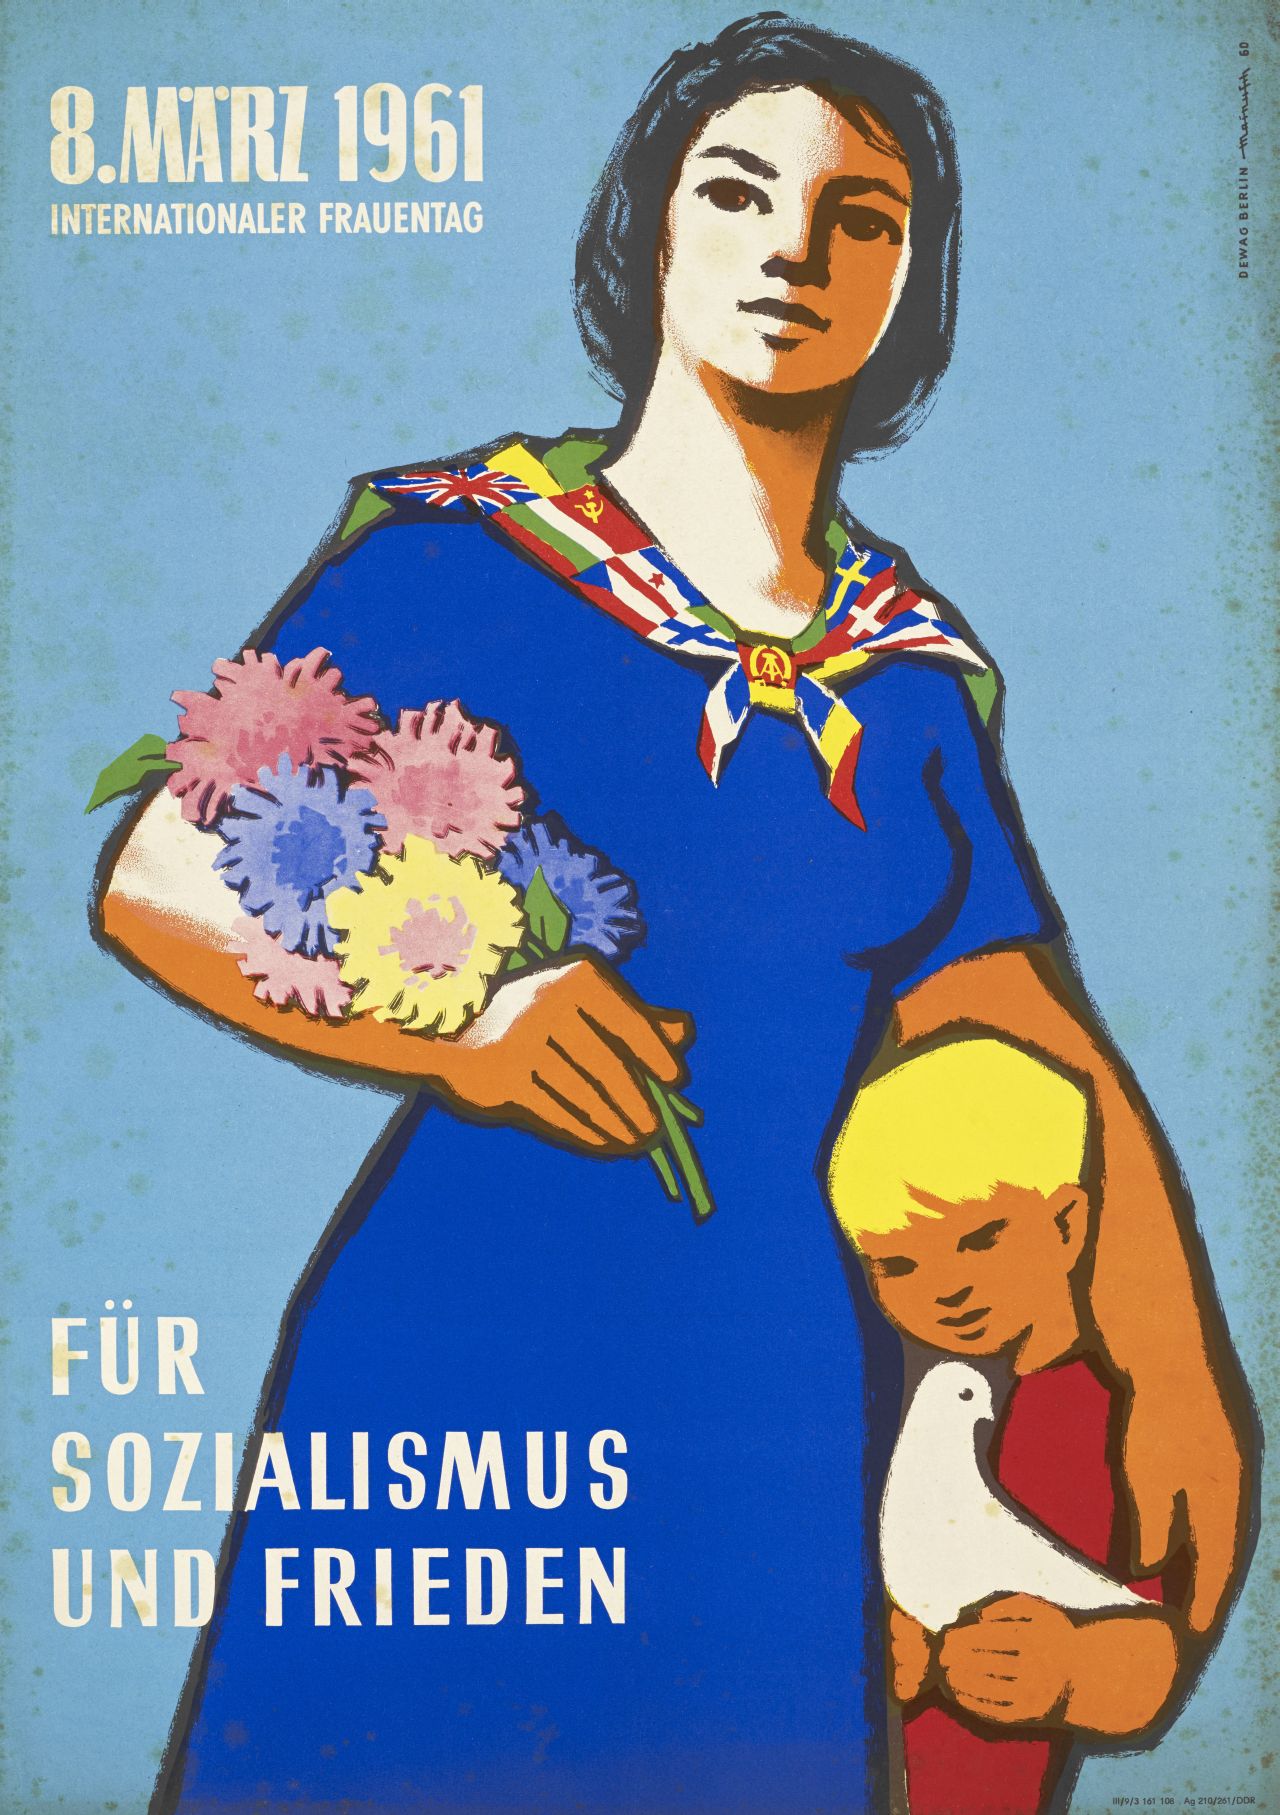 Hintergrund: blau, oben links in weißer Schrift Datum, unten links: Für Sozialismus und Frieden, mittig Frau mit Blumenstrauß, die ein Kind mit einer weißen Taube an sich drückt. Sie trägt ein Halstuch, das aus verschiedenen Fahnen zusammengesetzt ist.